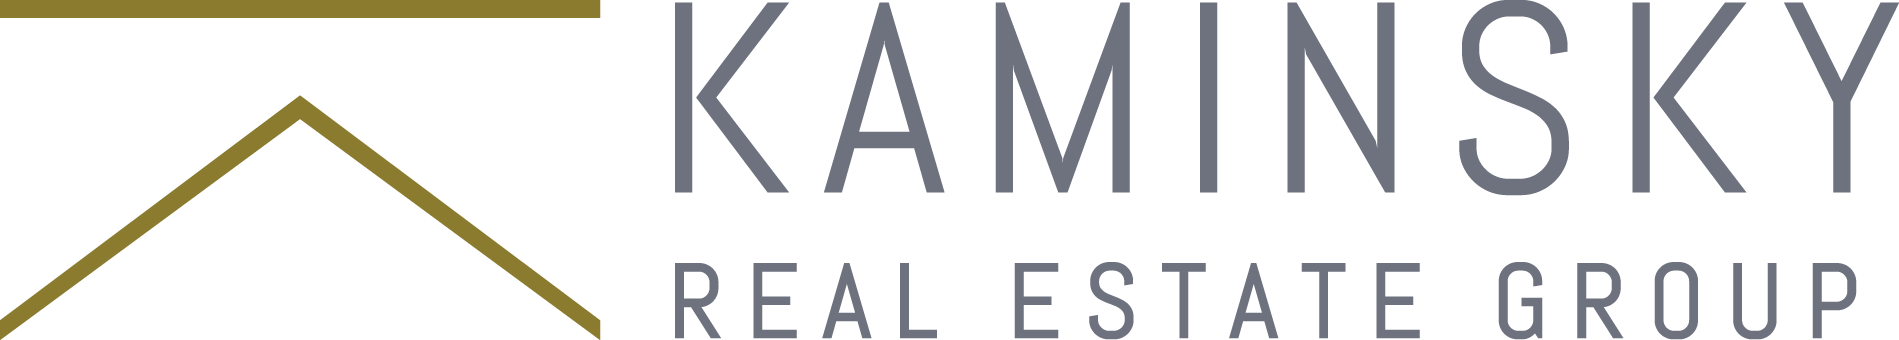 Kaminsky_logo